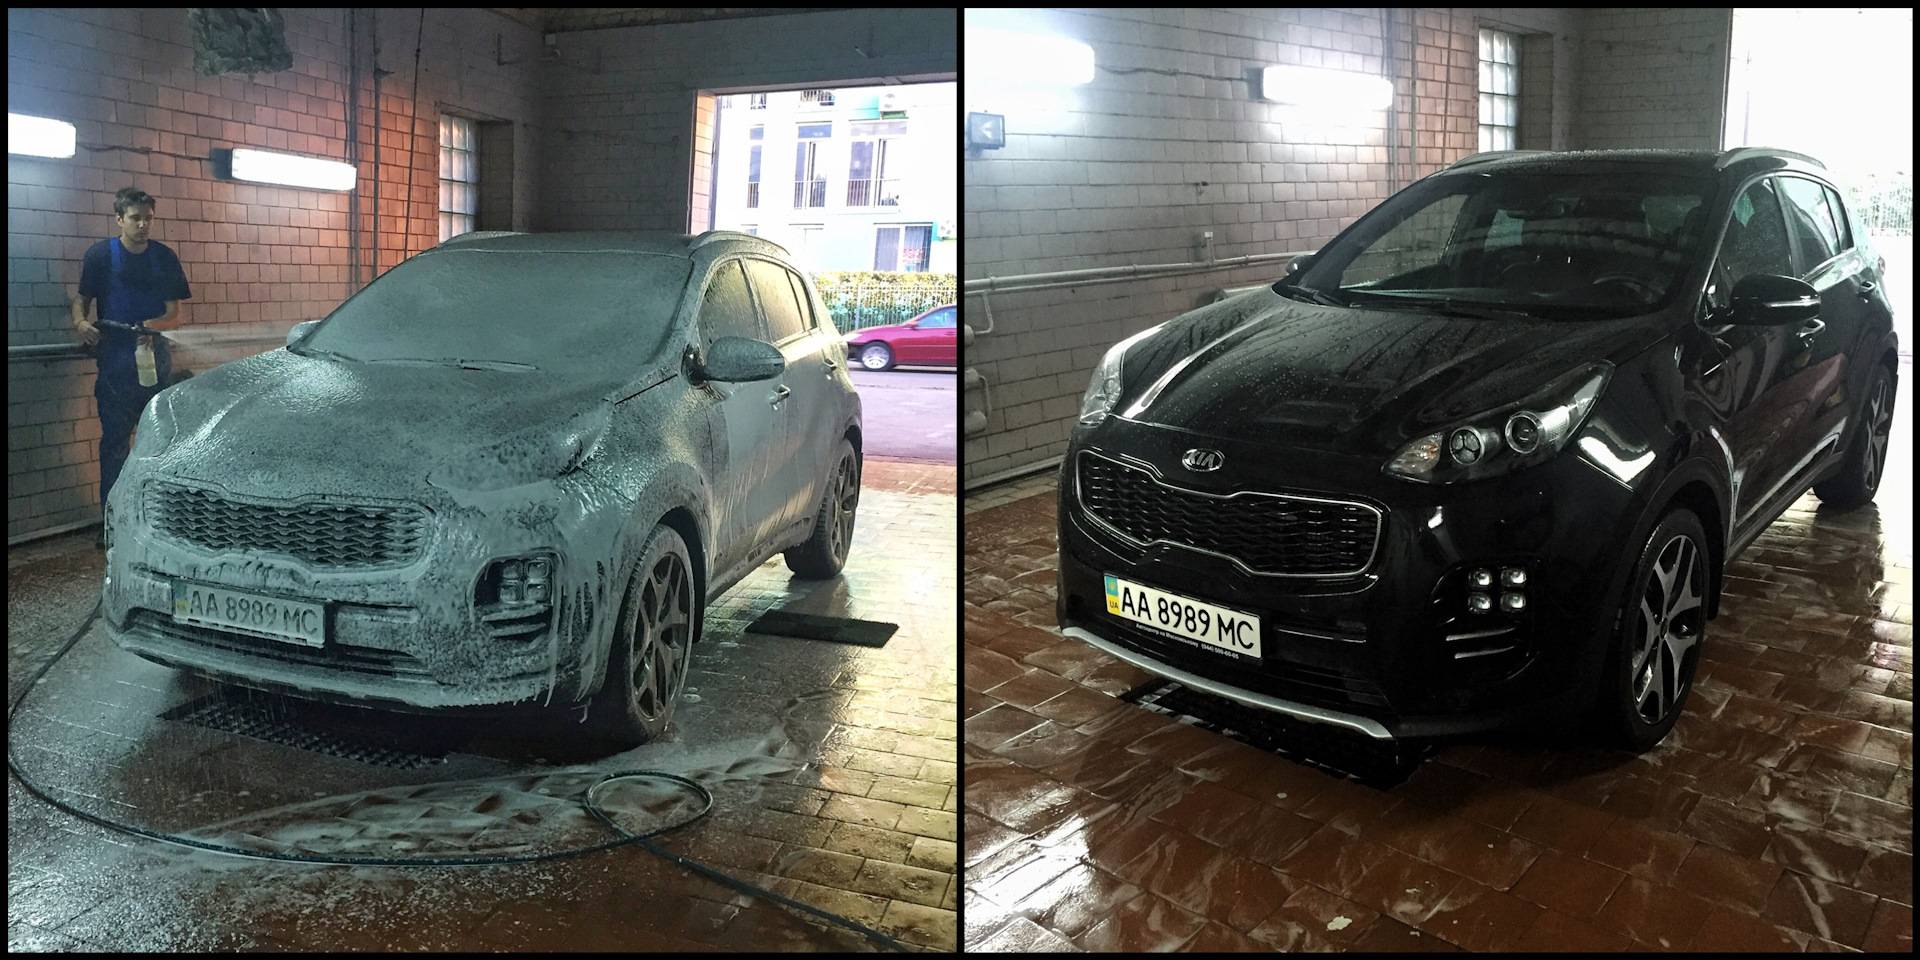 Советы по правильному использованию мойки самообслуживания при мытье автомобиля